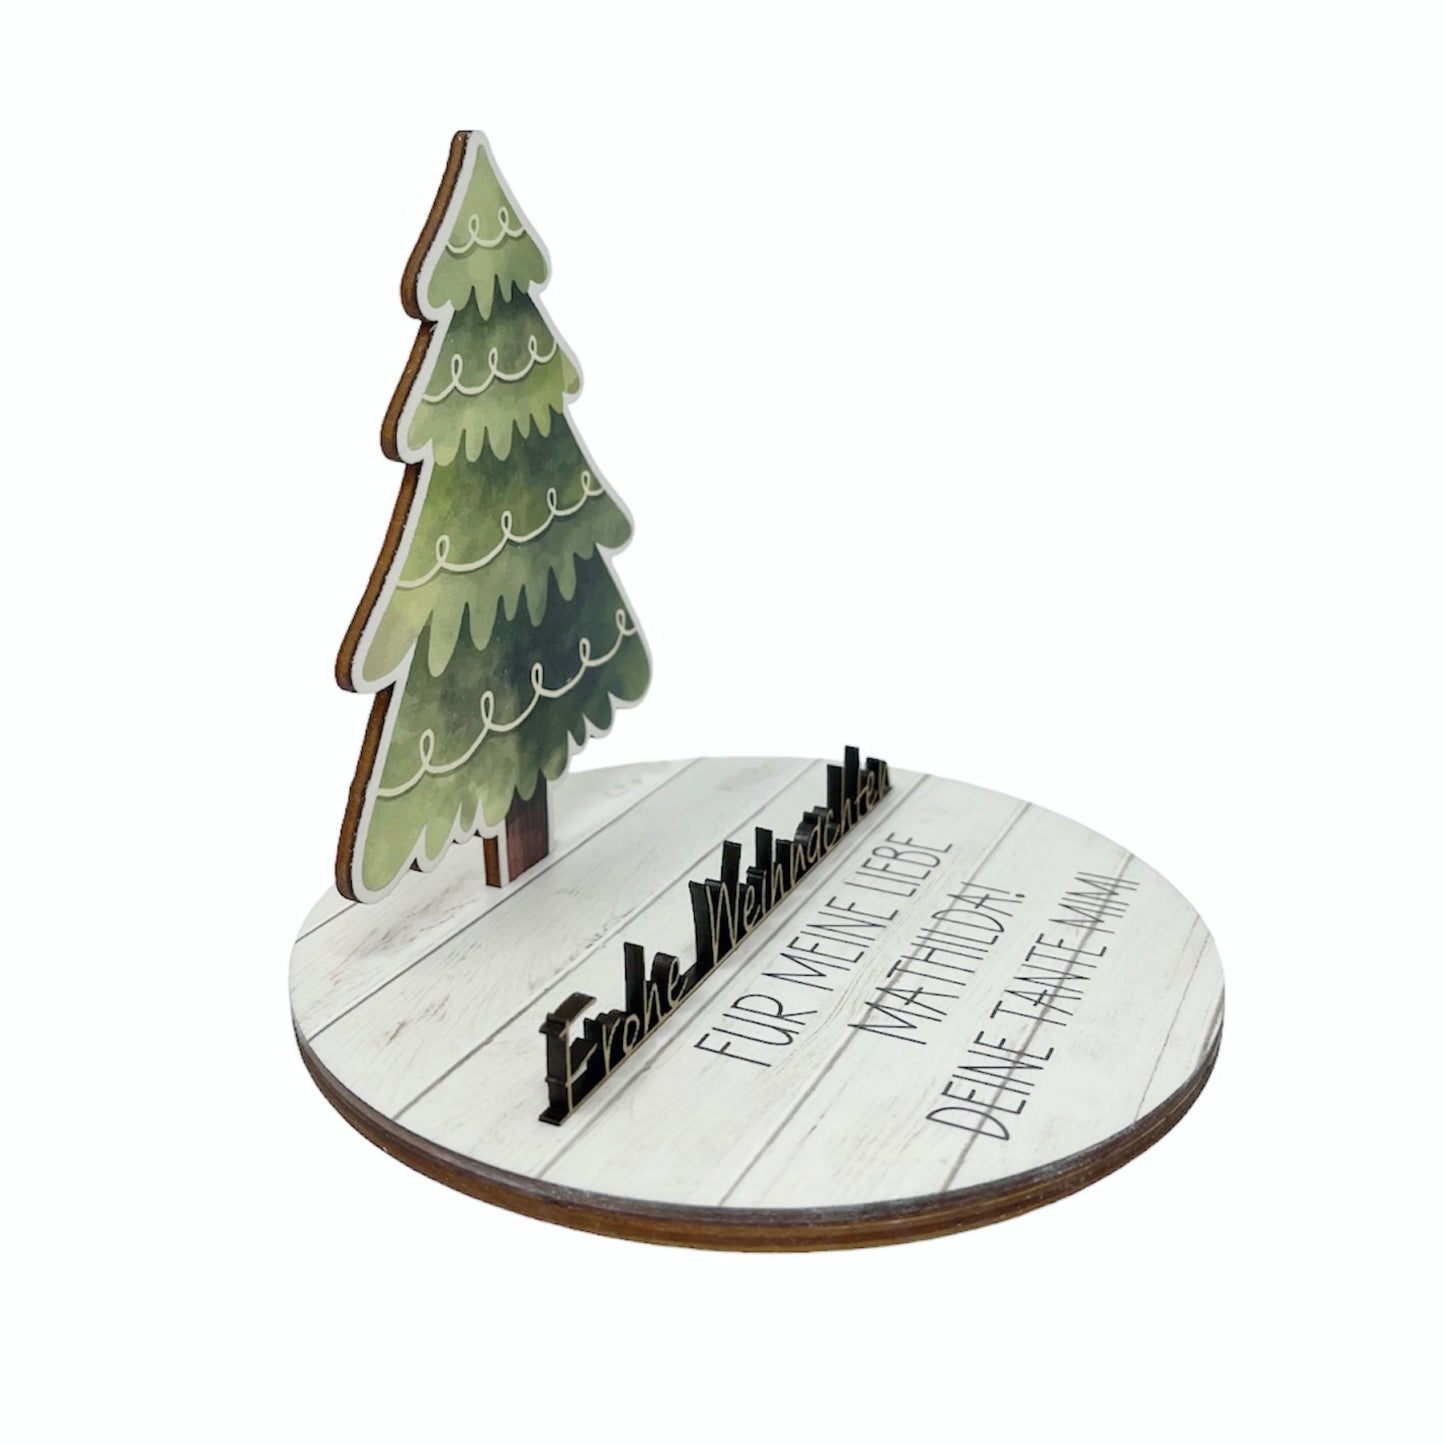 Geldgeschenk zu Weihnachten aus Holz bedruckt mit Wunschtext